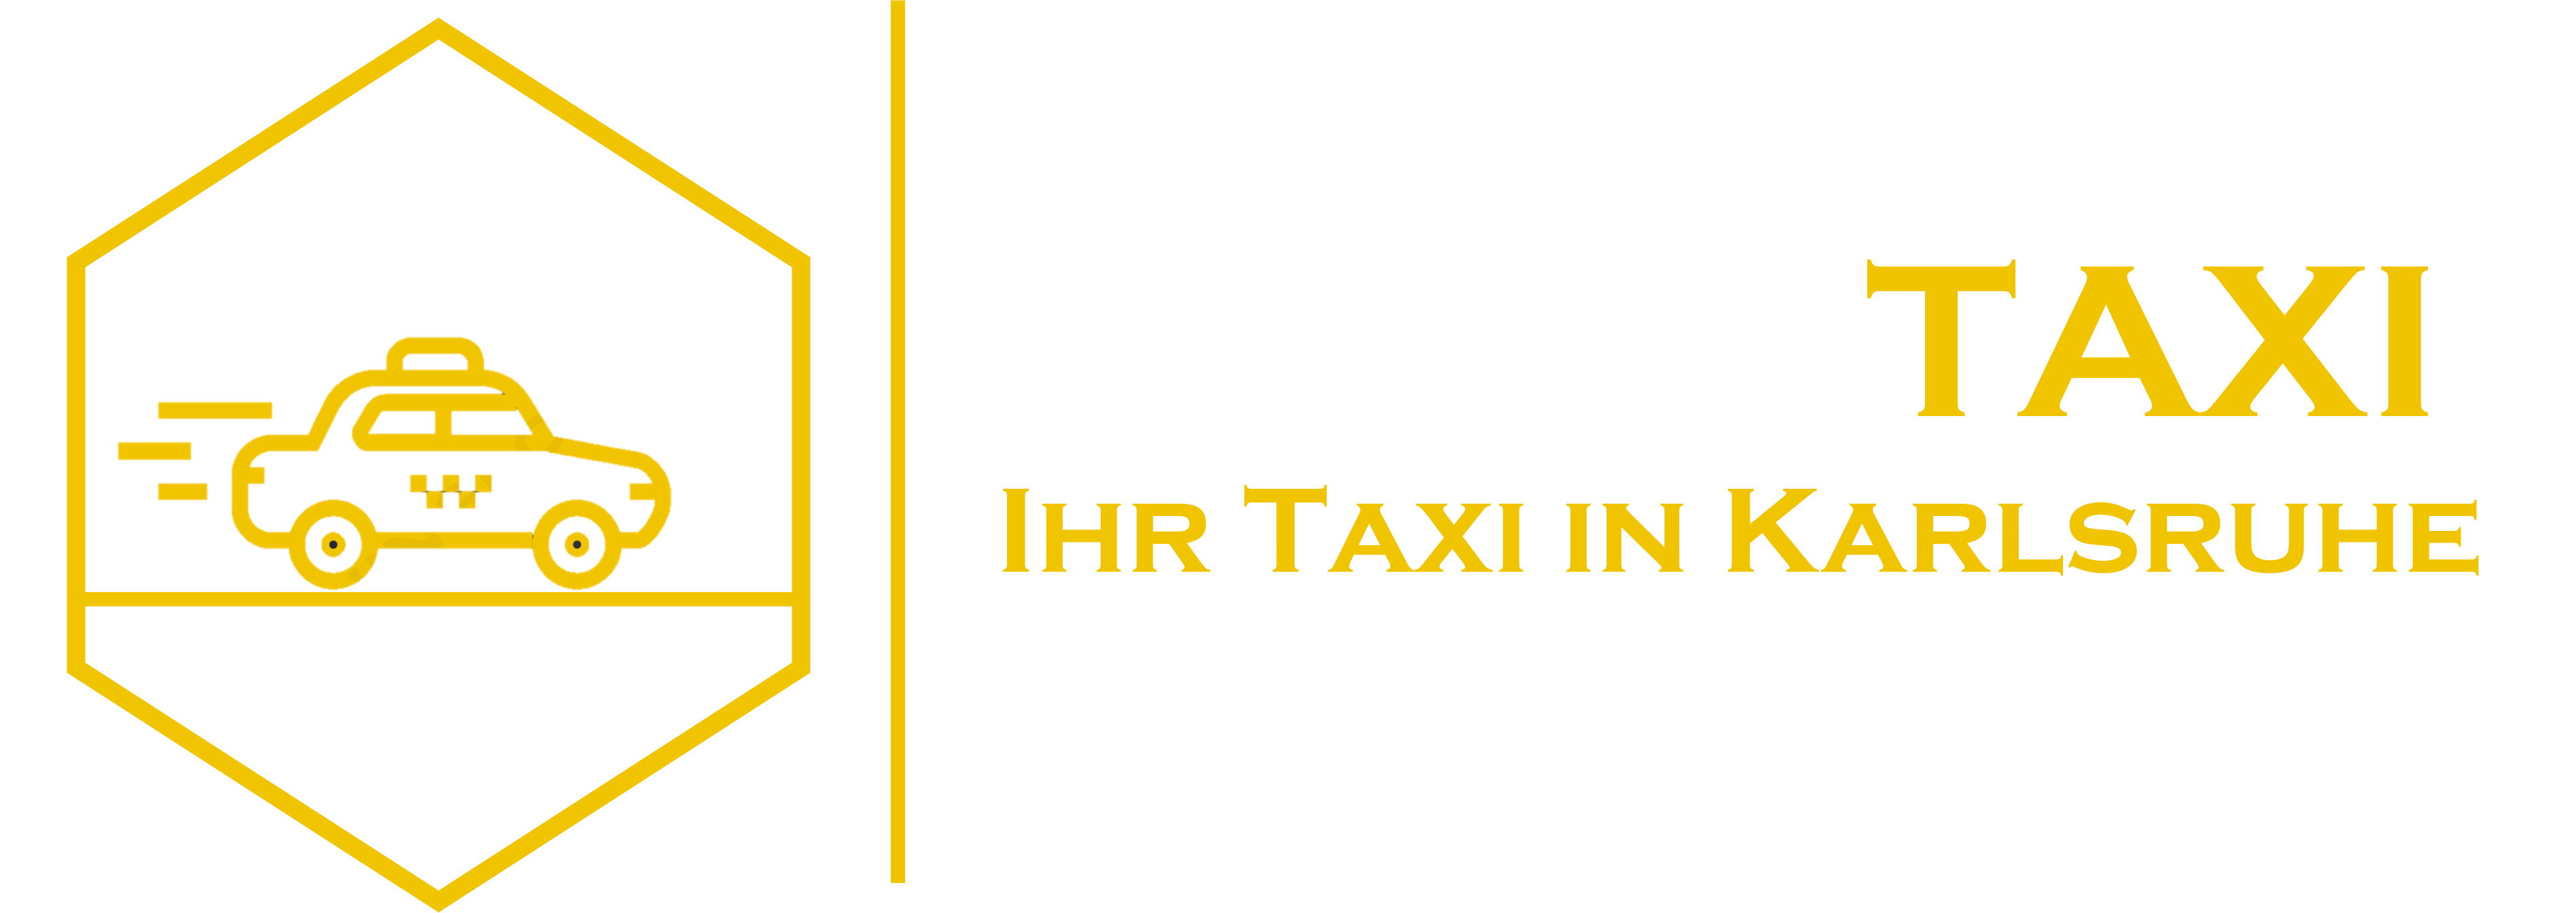 Prime Taxi Karlsruhe Logo